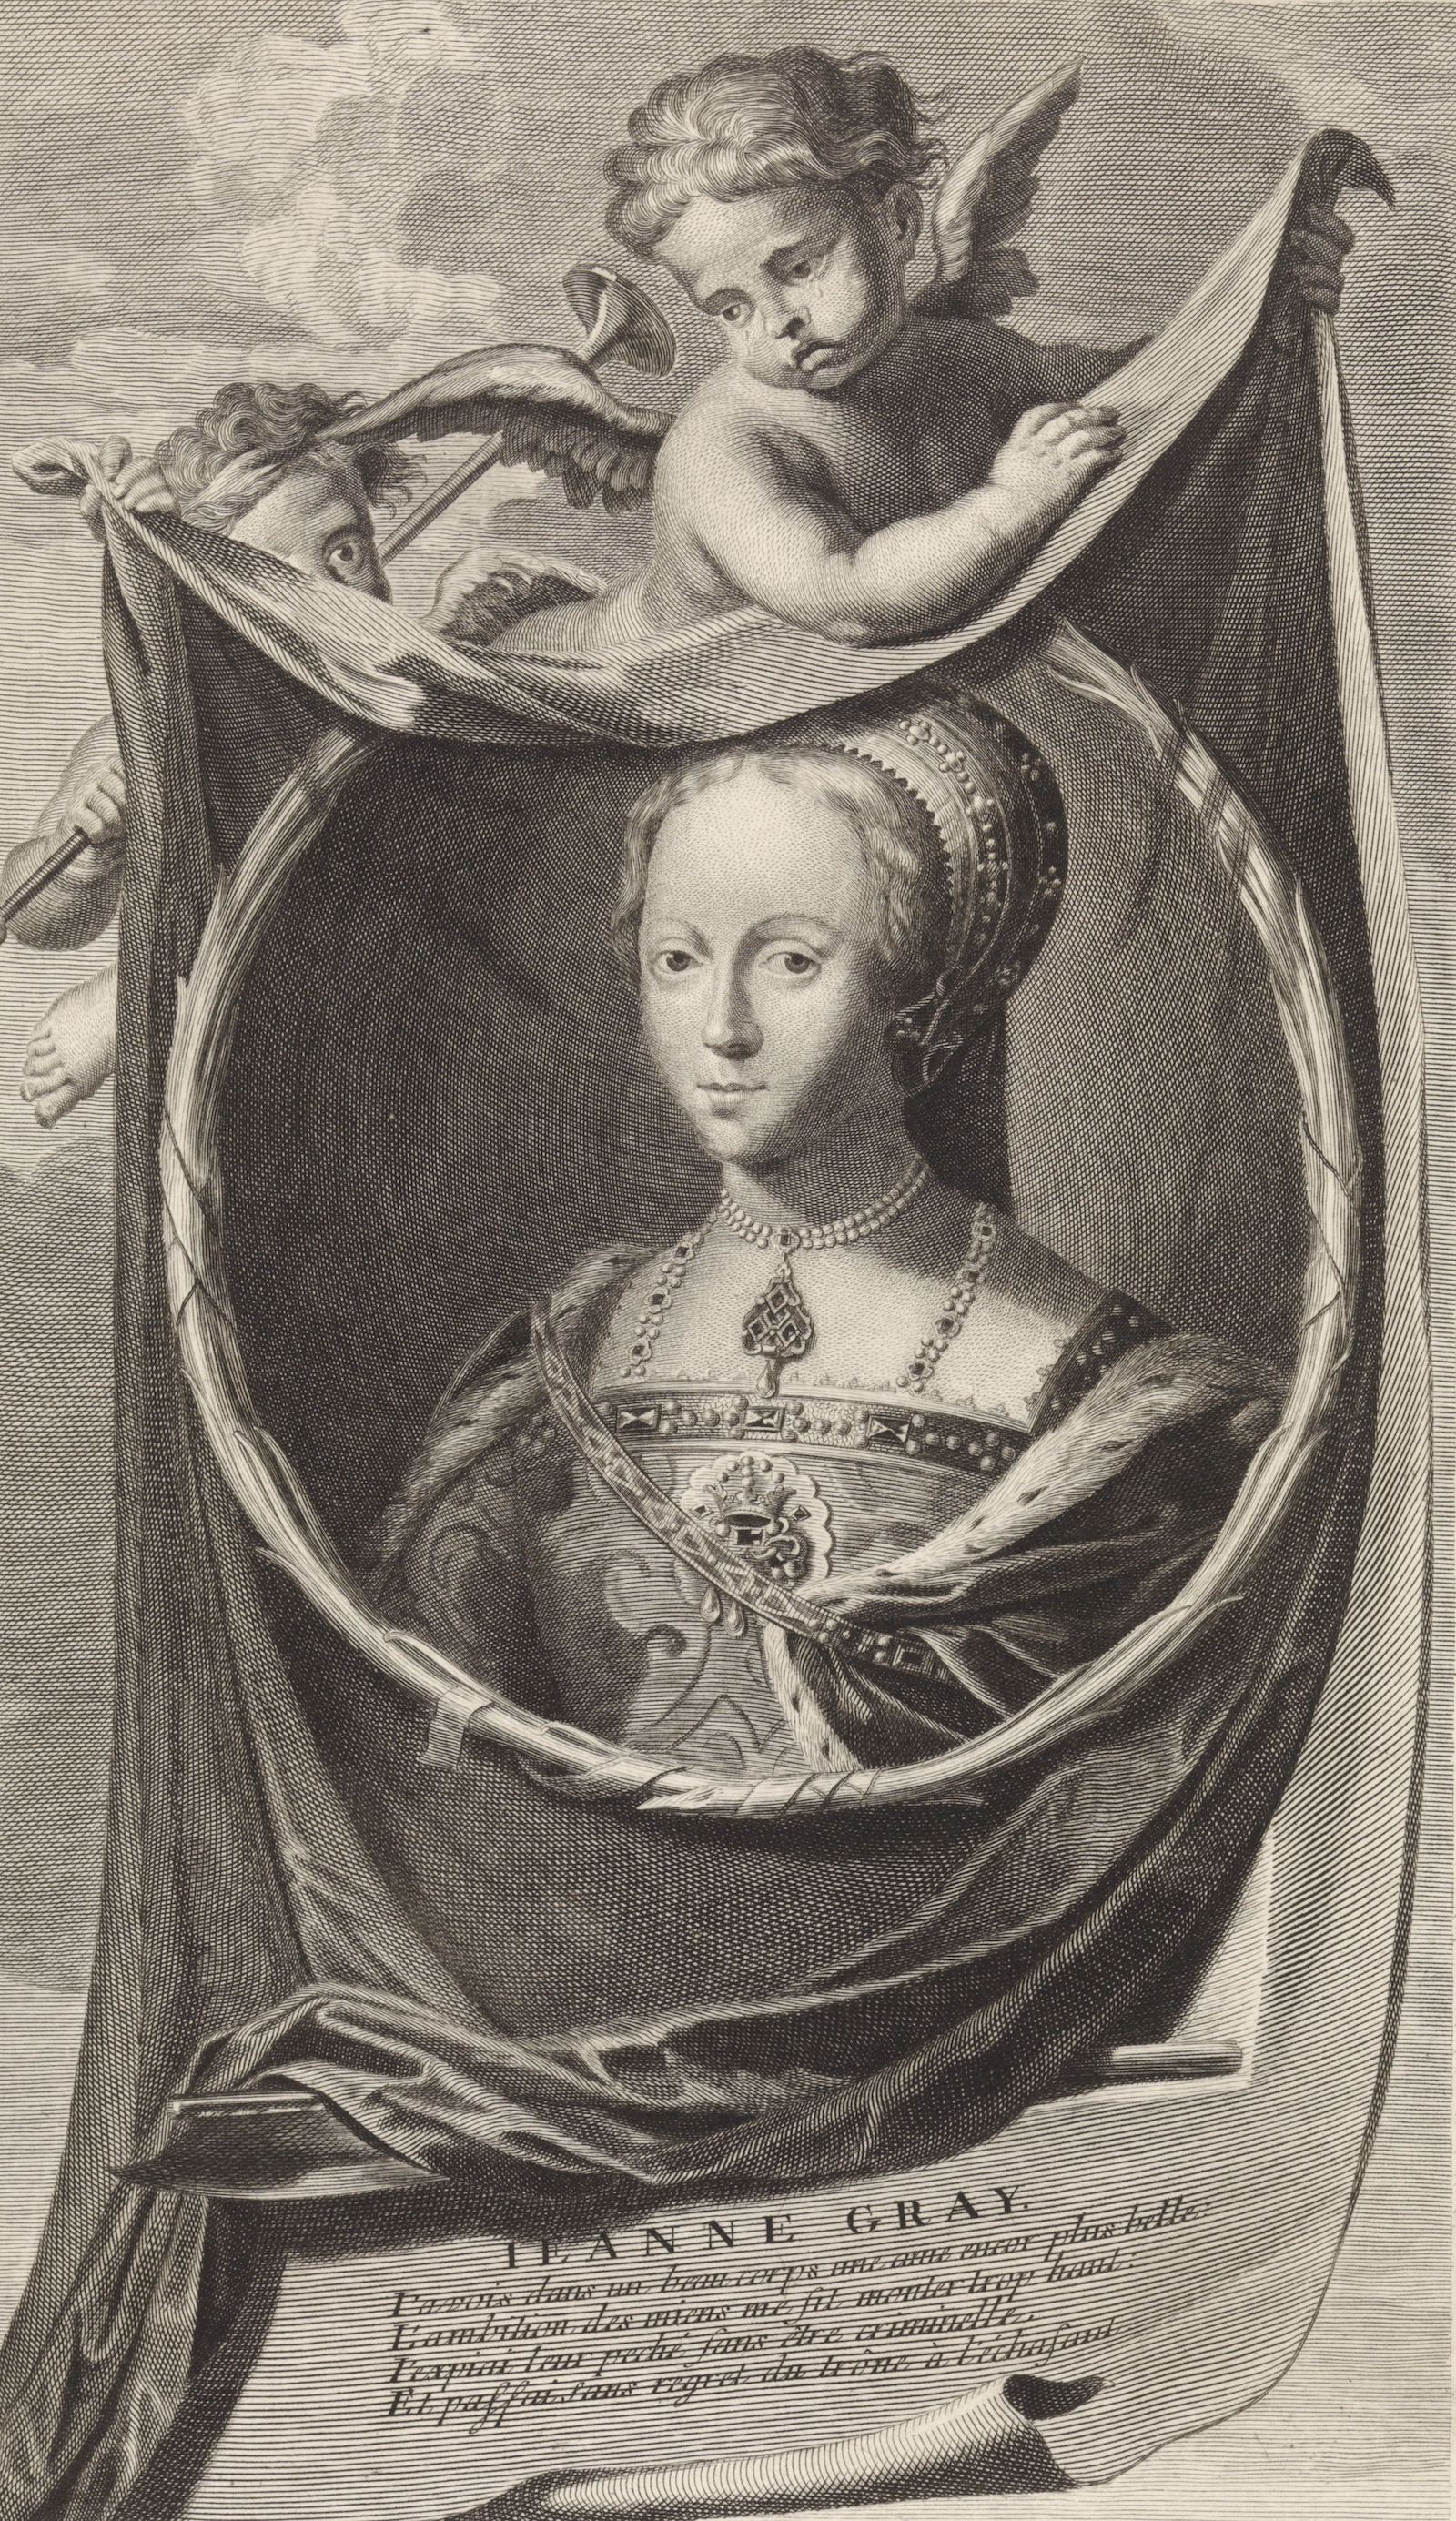 Lady Jane Grey, Cornelis Martinus Vermeulen, after Adriaen van der Werff, 1697. Rijksmuseum. Public Domain.